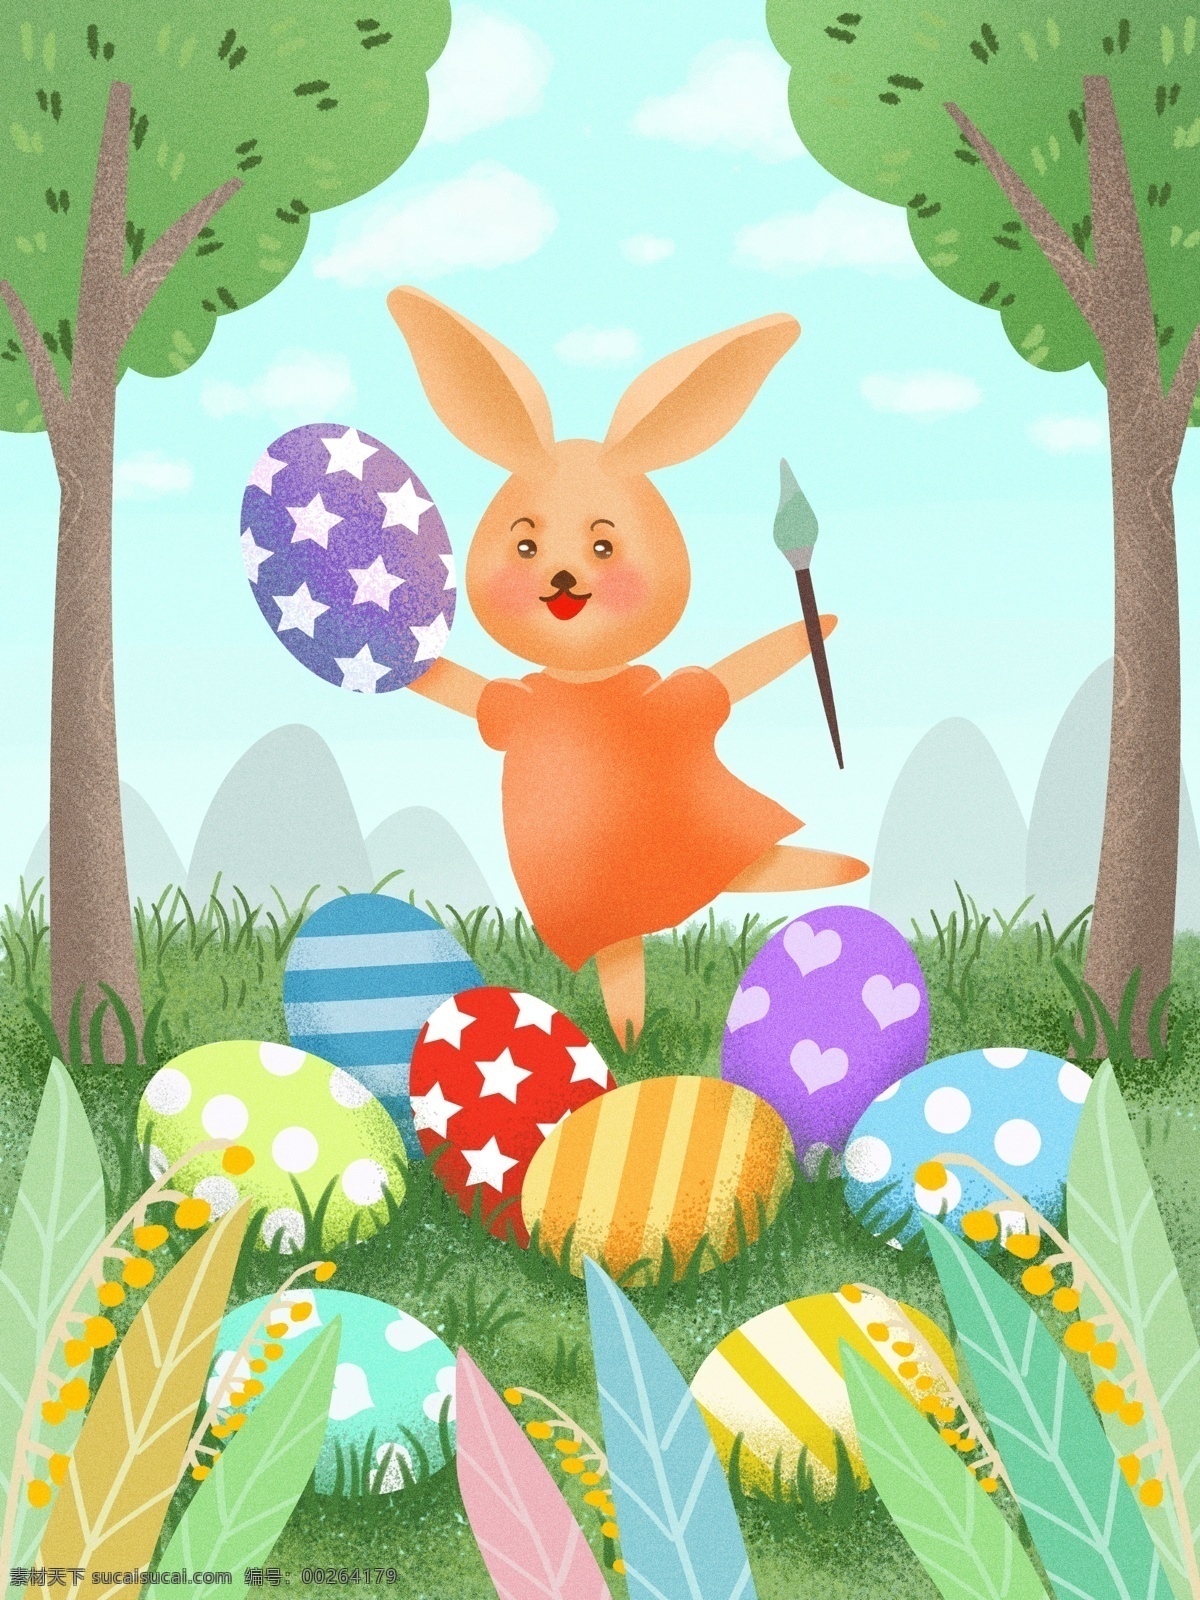 复活节 兔子 画 彩蛋 植物 草地 小清新插画 公众号配图 微博配图 微信配图 手机用图 绿色